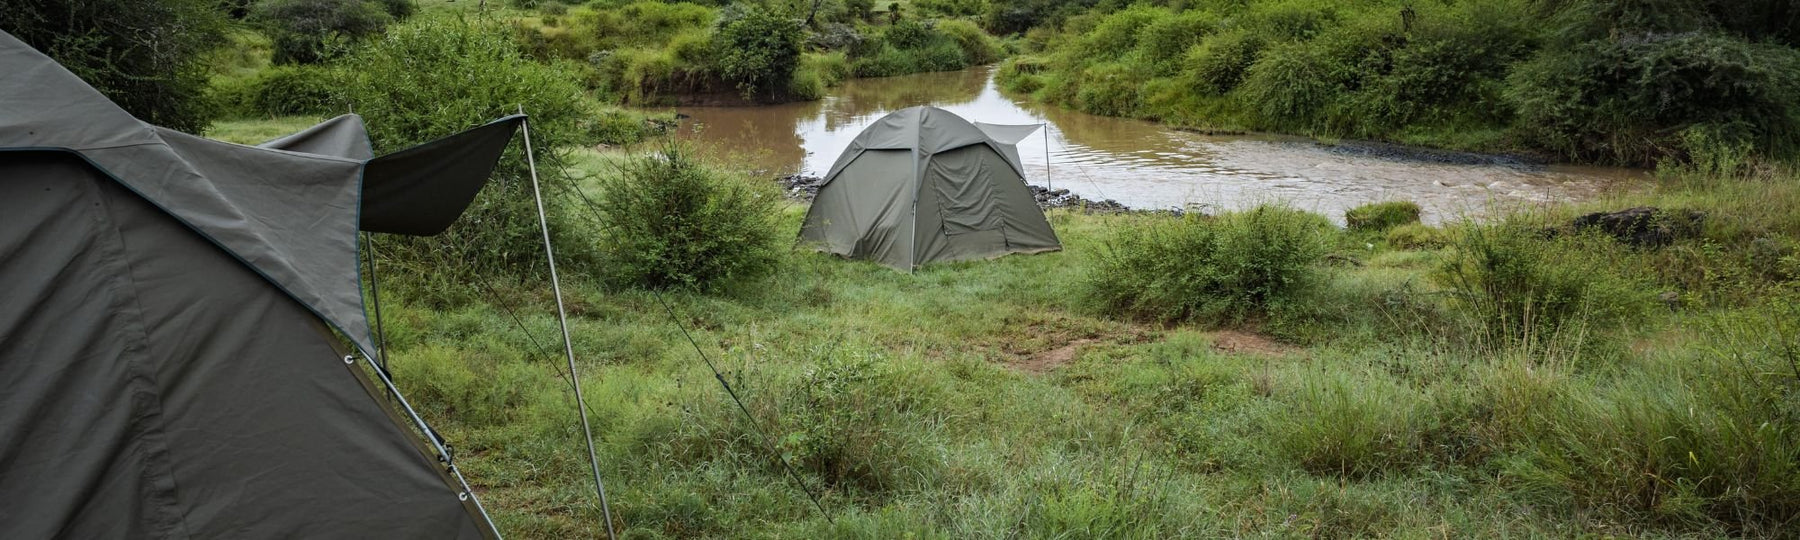 Les meilleurs conseils de Snugpak pour du camping sauvage - Welkit